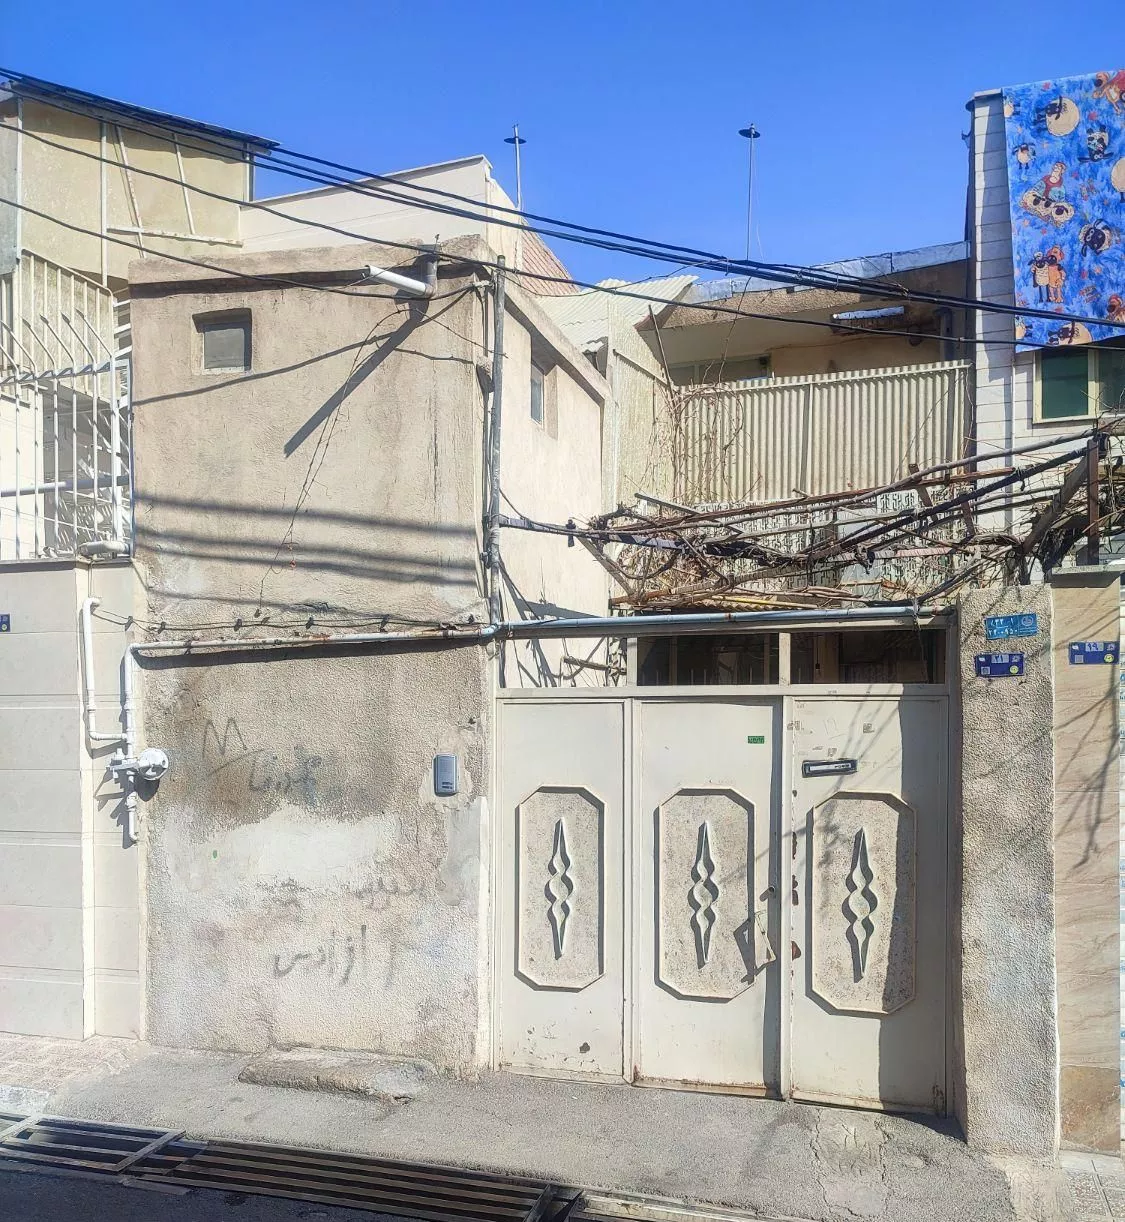 فروش خانه 2 طبقه در محله شاطره متراژ 100 متر